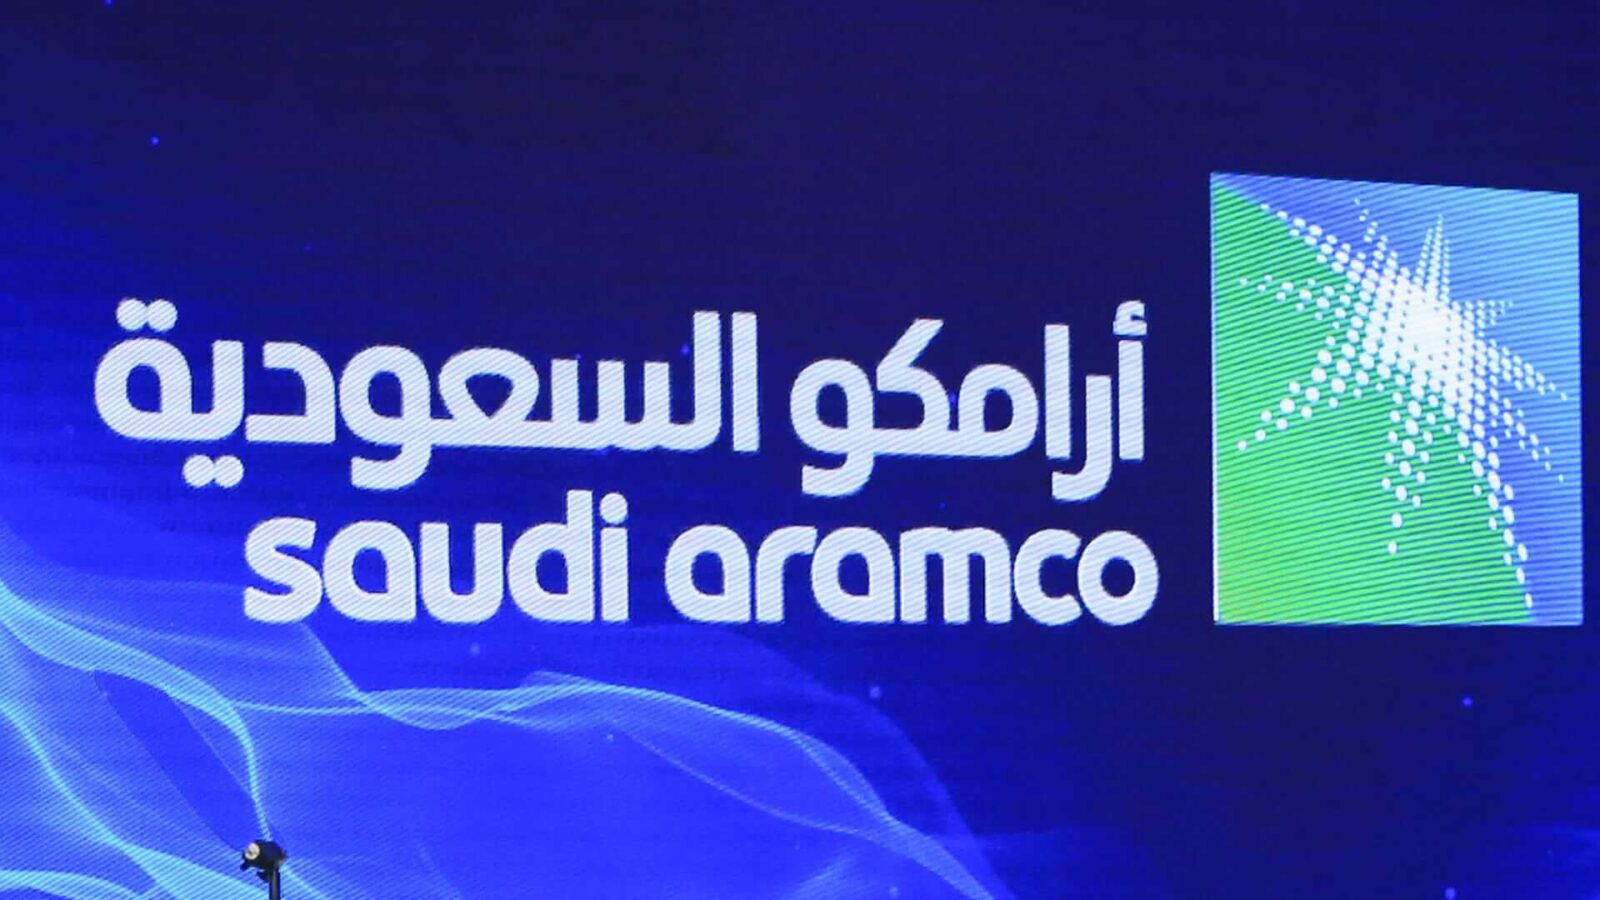 لغير السعوديين في شركة ارامكو السعودية - وظائف لغير السعوديين في شركة ارامكو السعودية